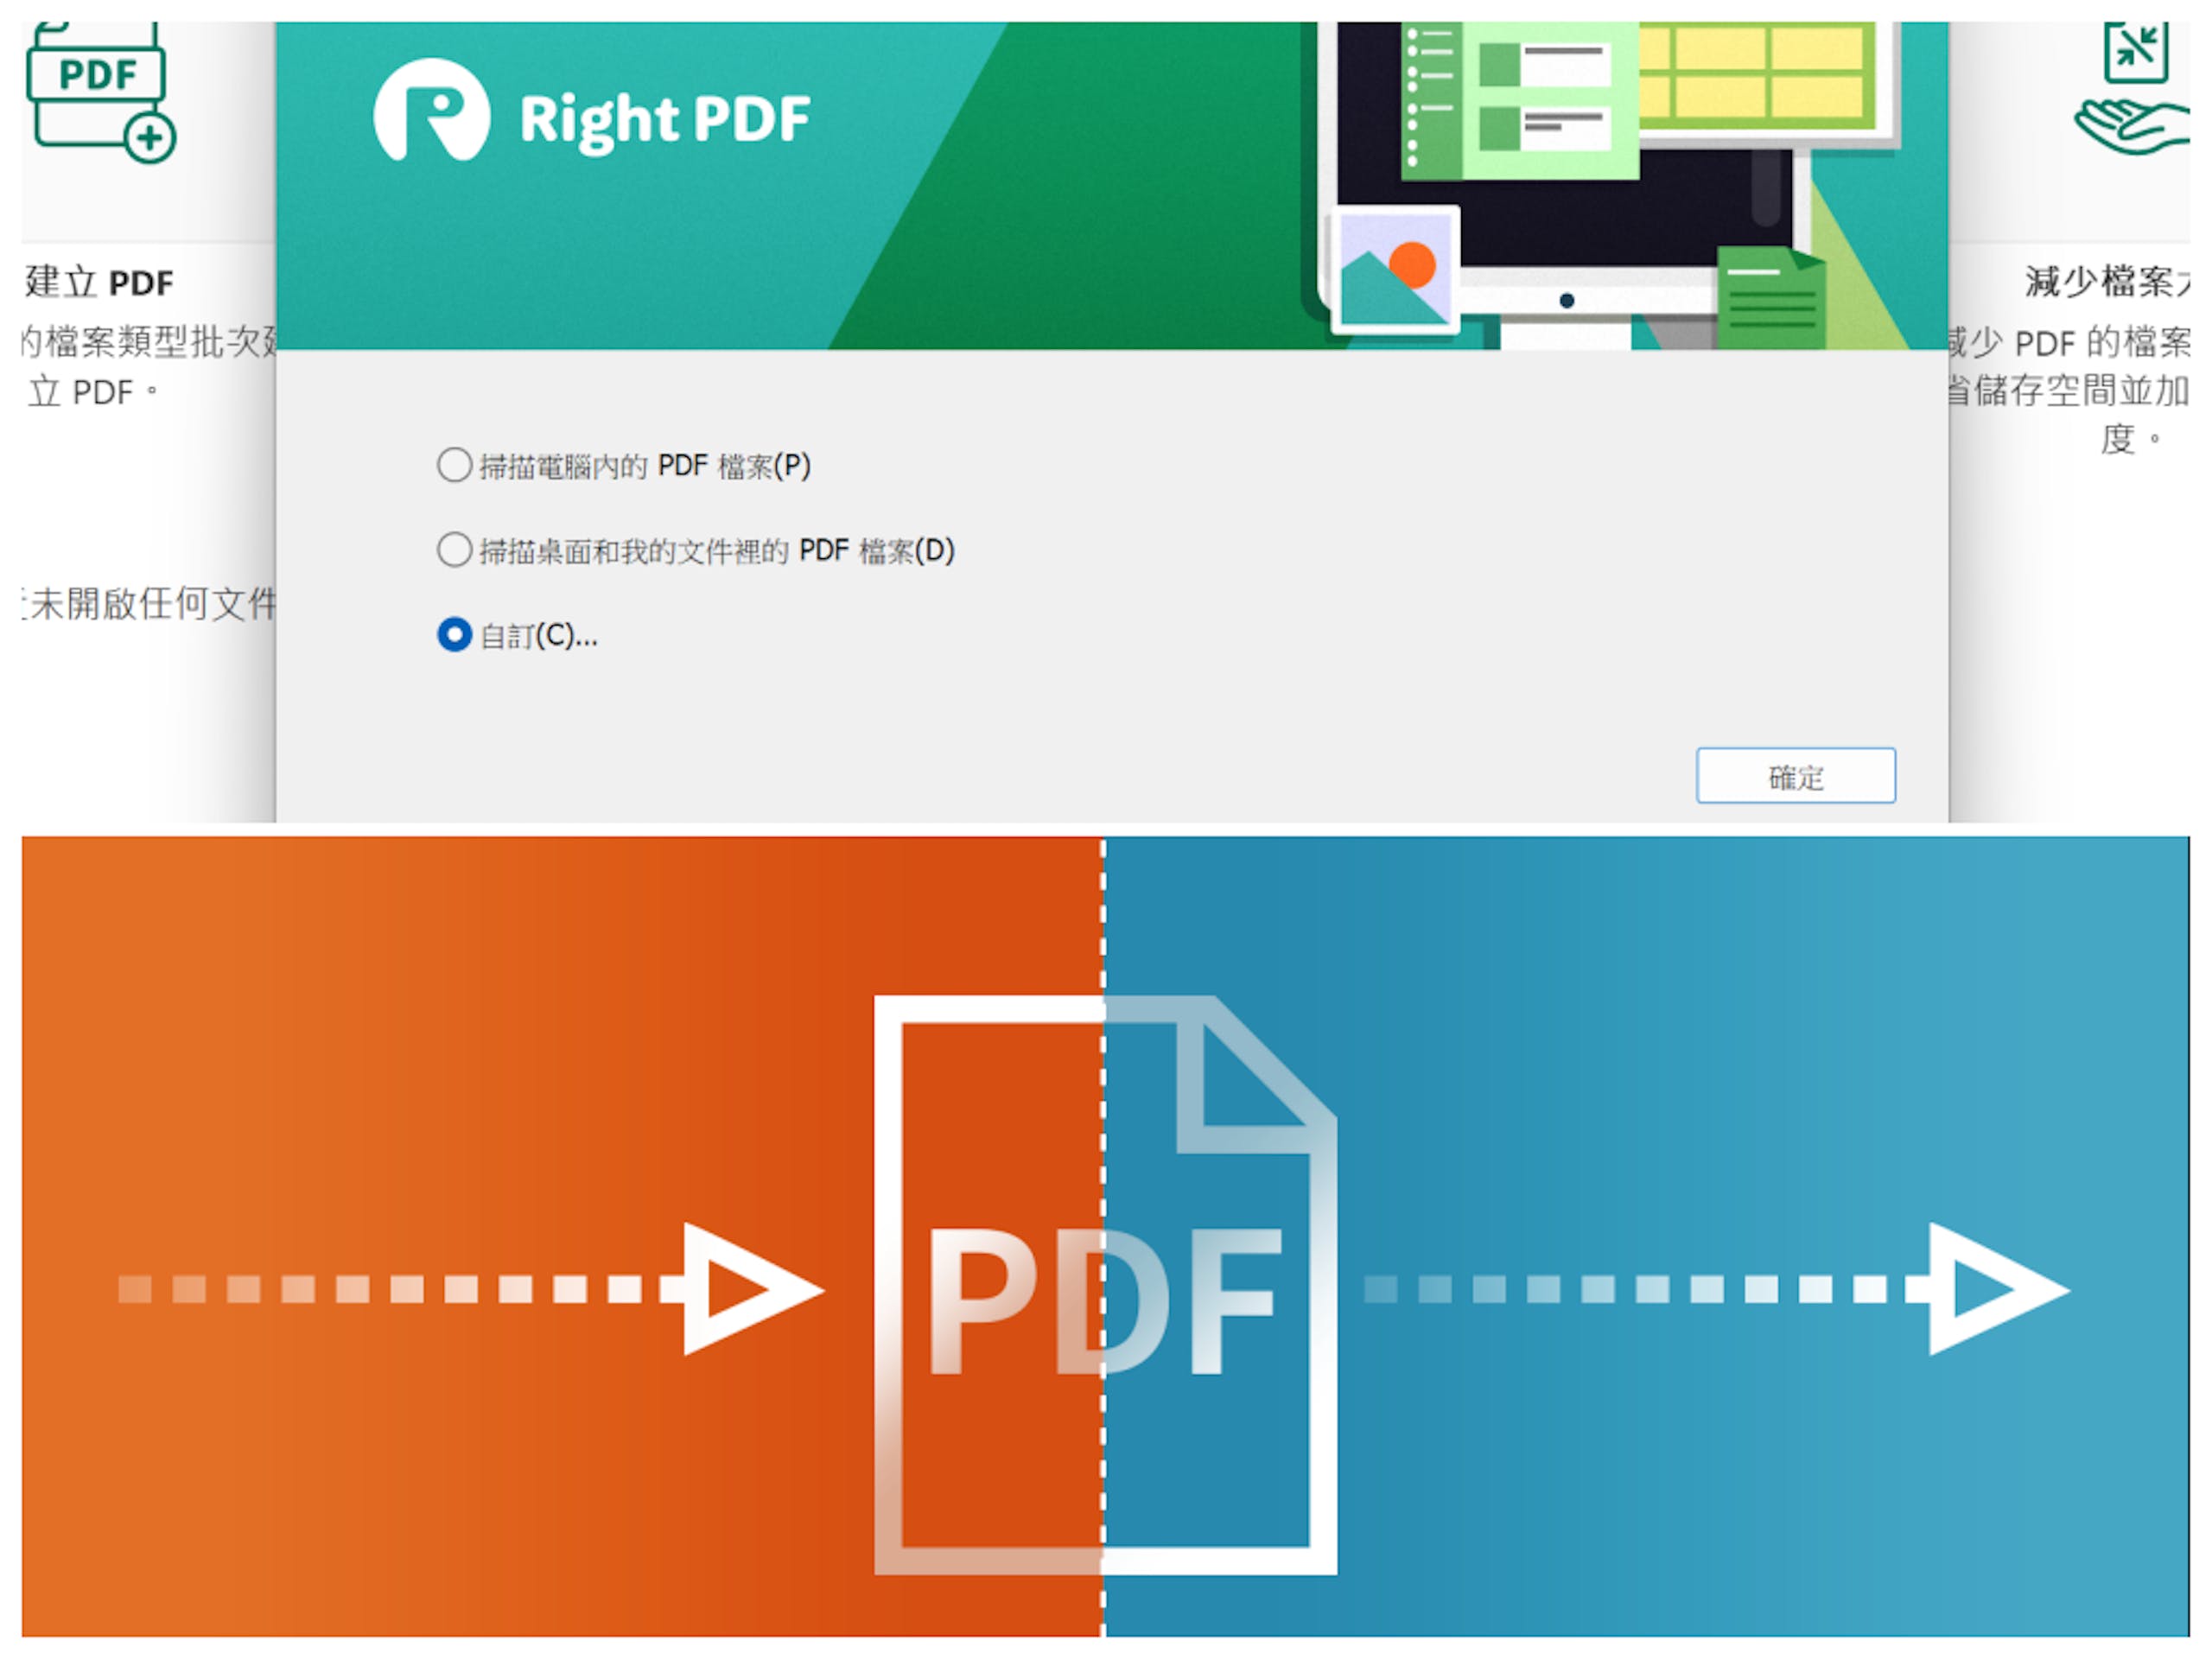 照片中提到了PDF、建立 PDF、的檔案類型批次，跟Publix有關，包含了軟件、PDF格式、軟件、文獻、微軟Word